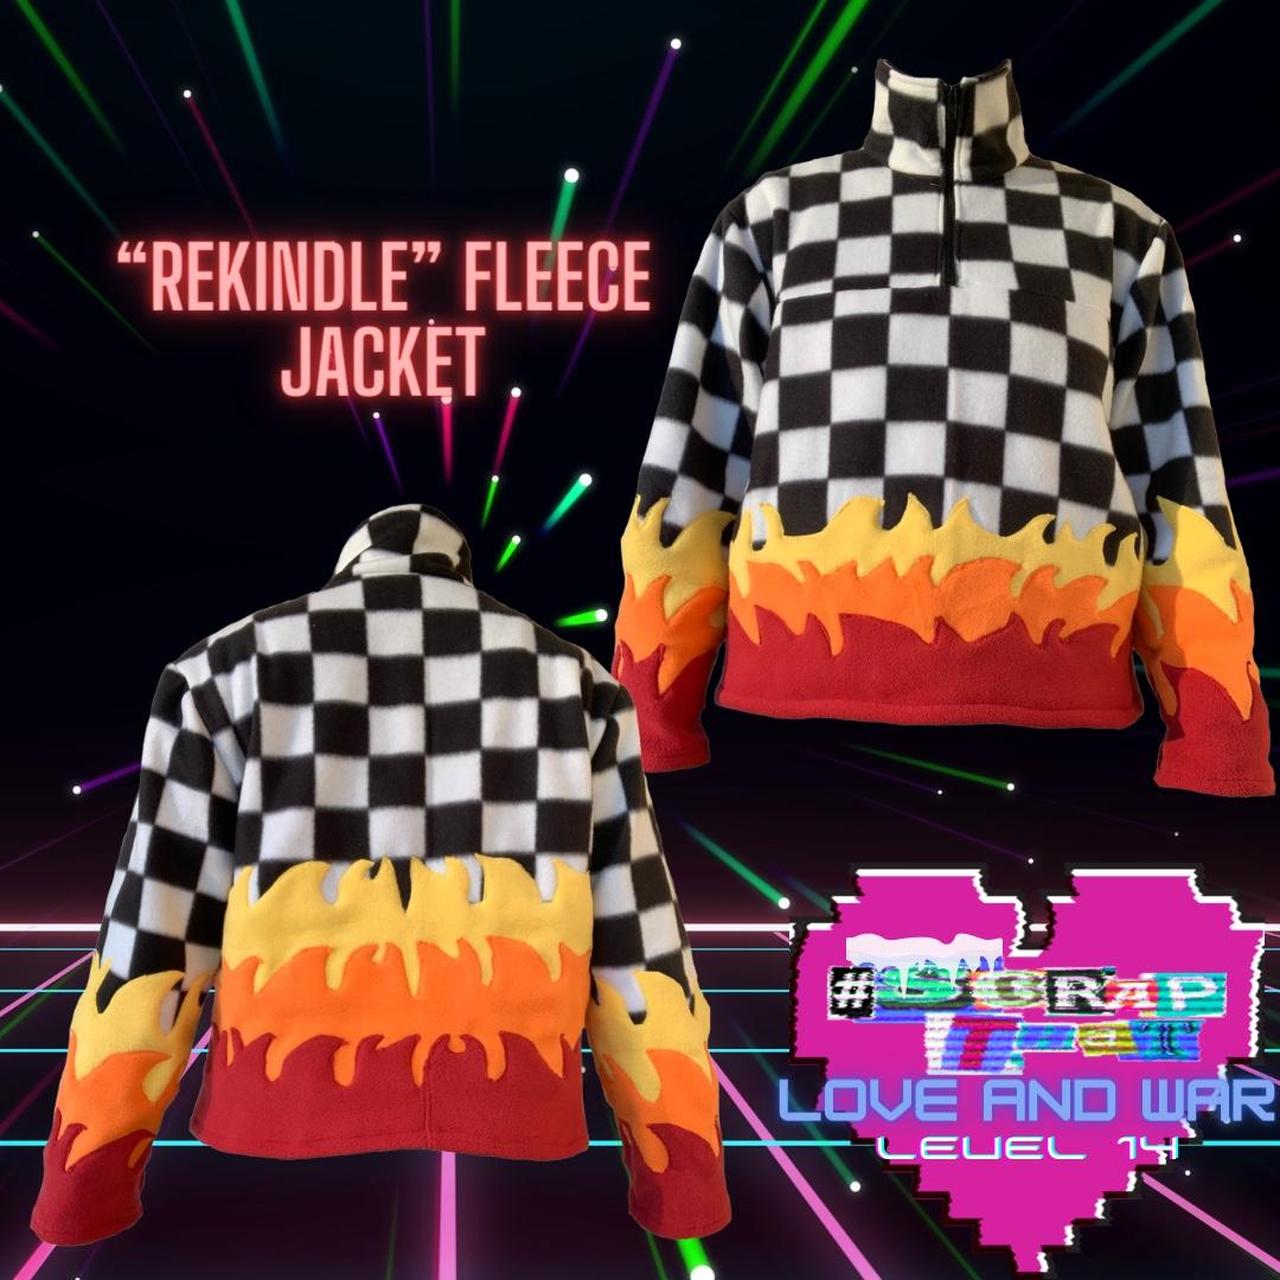 "Rekindle" Fleece Jacket